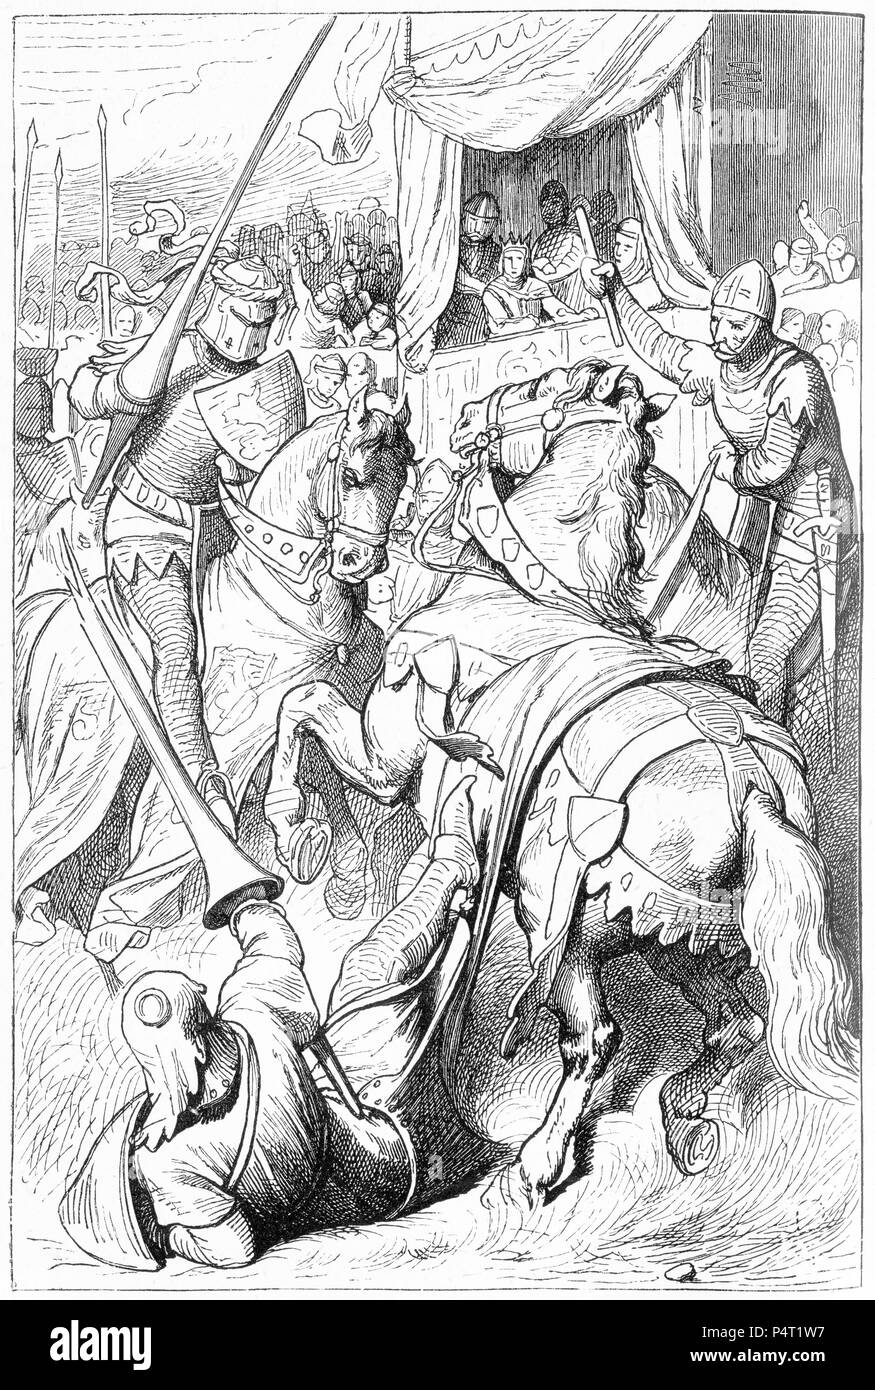 Gravure de combats chevaliers lors d'un tournoi. Illustré d'une copie d'Ivanhoé, 1878. Banque D'Images